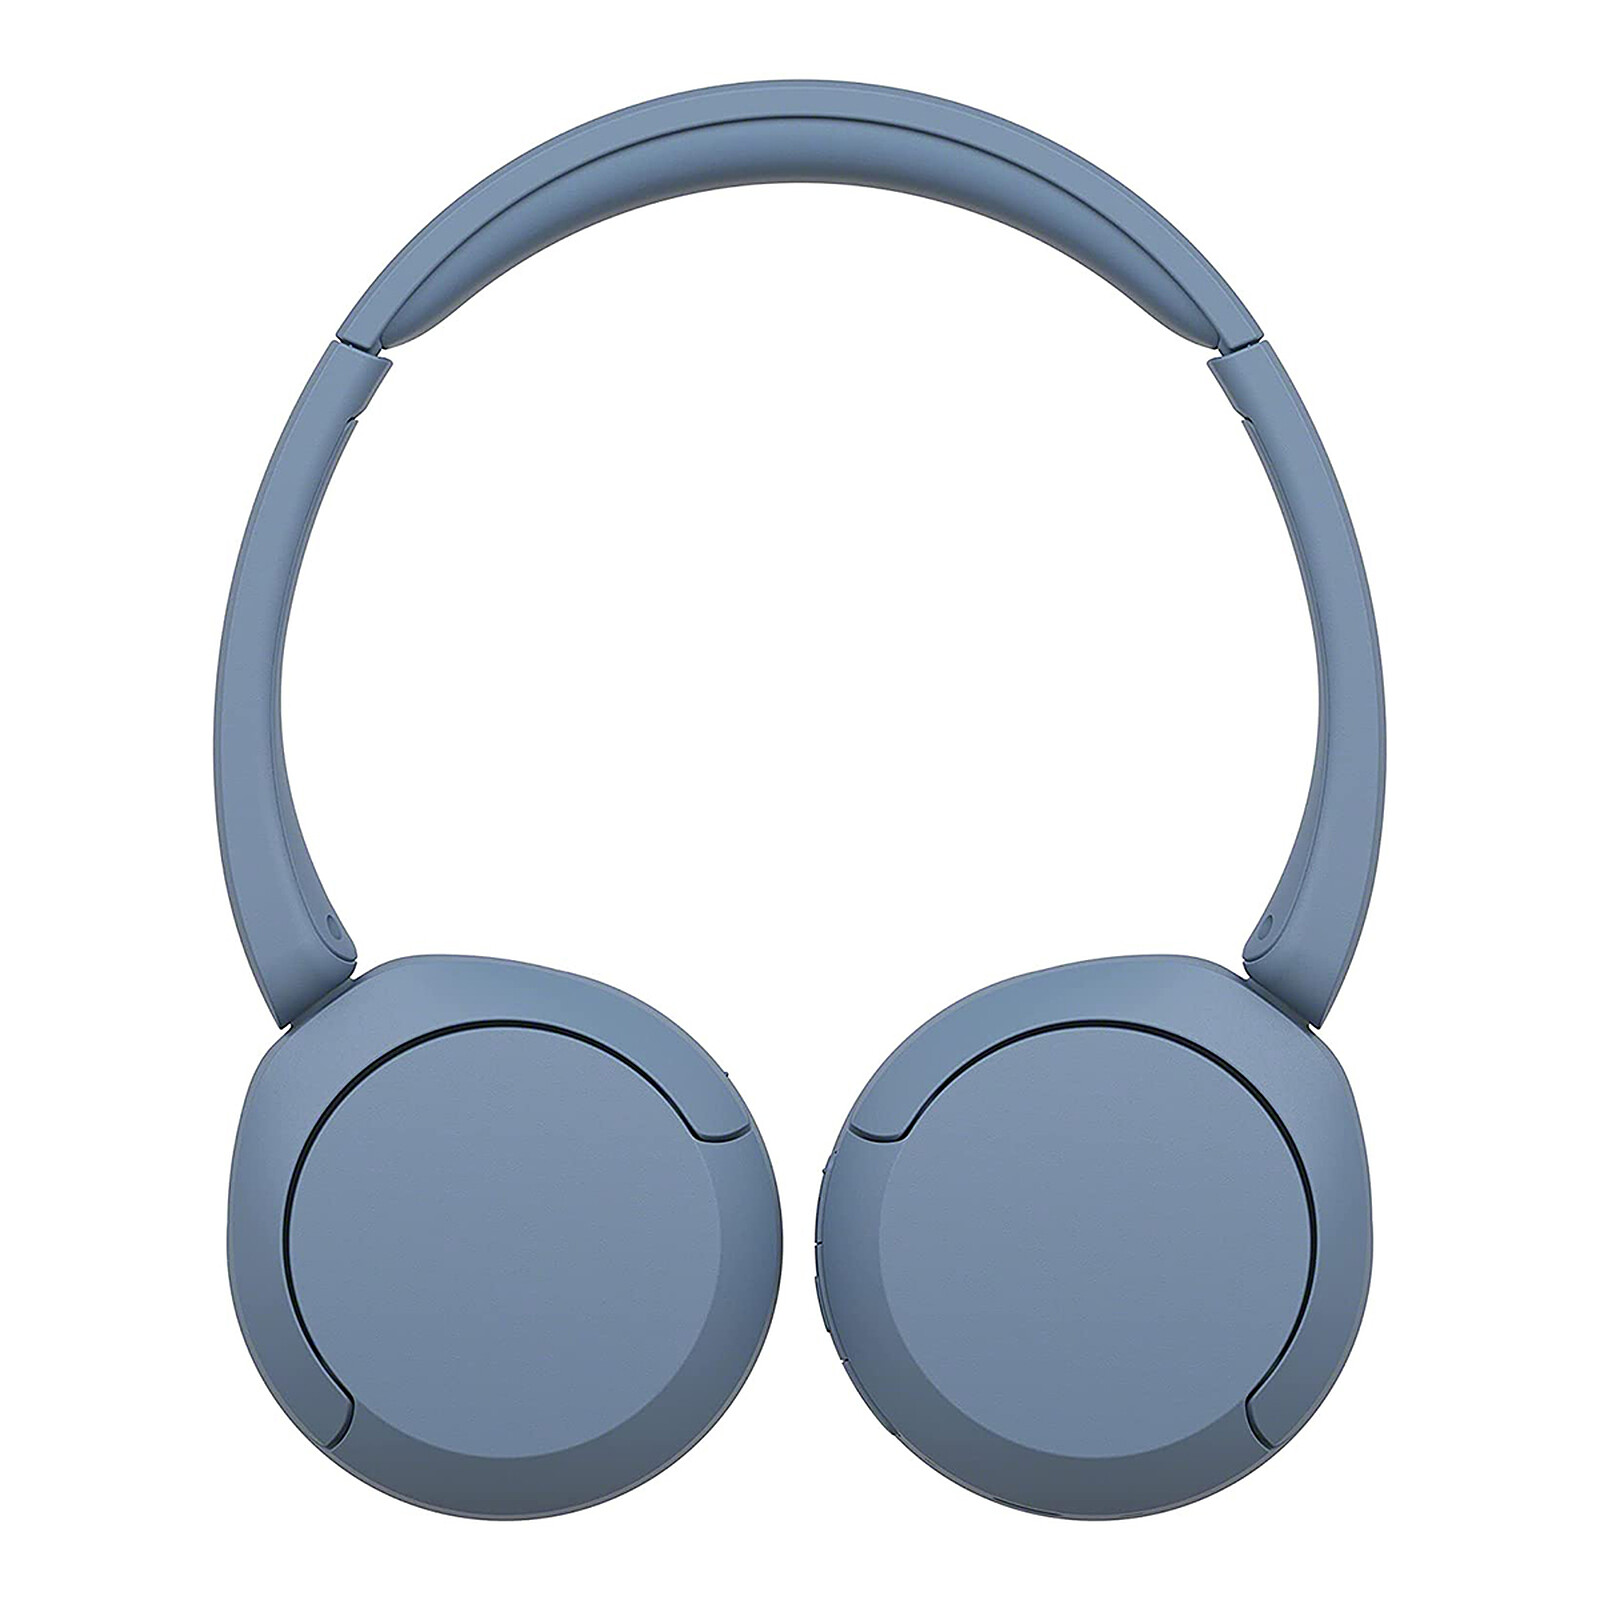 Test Casque Bluetooth Sony WH-CH510 : pas cher et endurant - Les Numériques